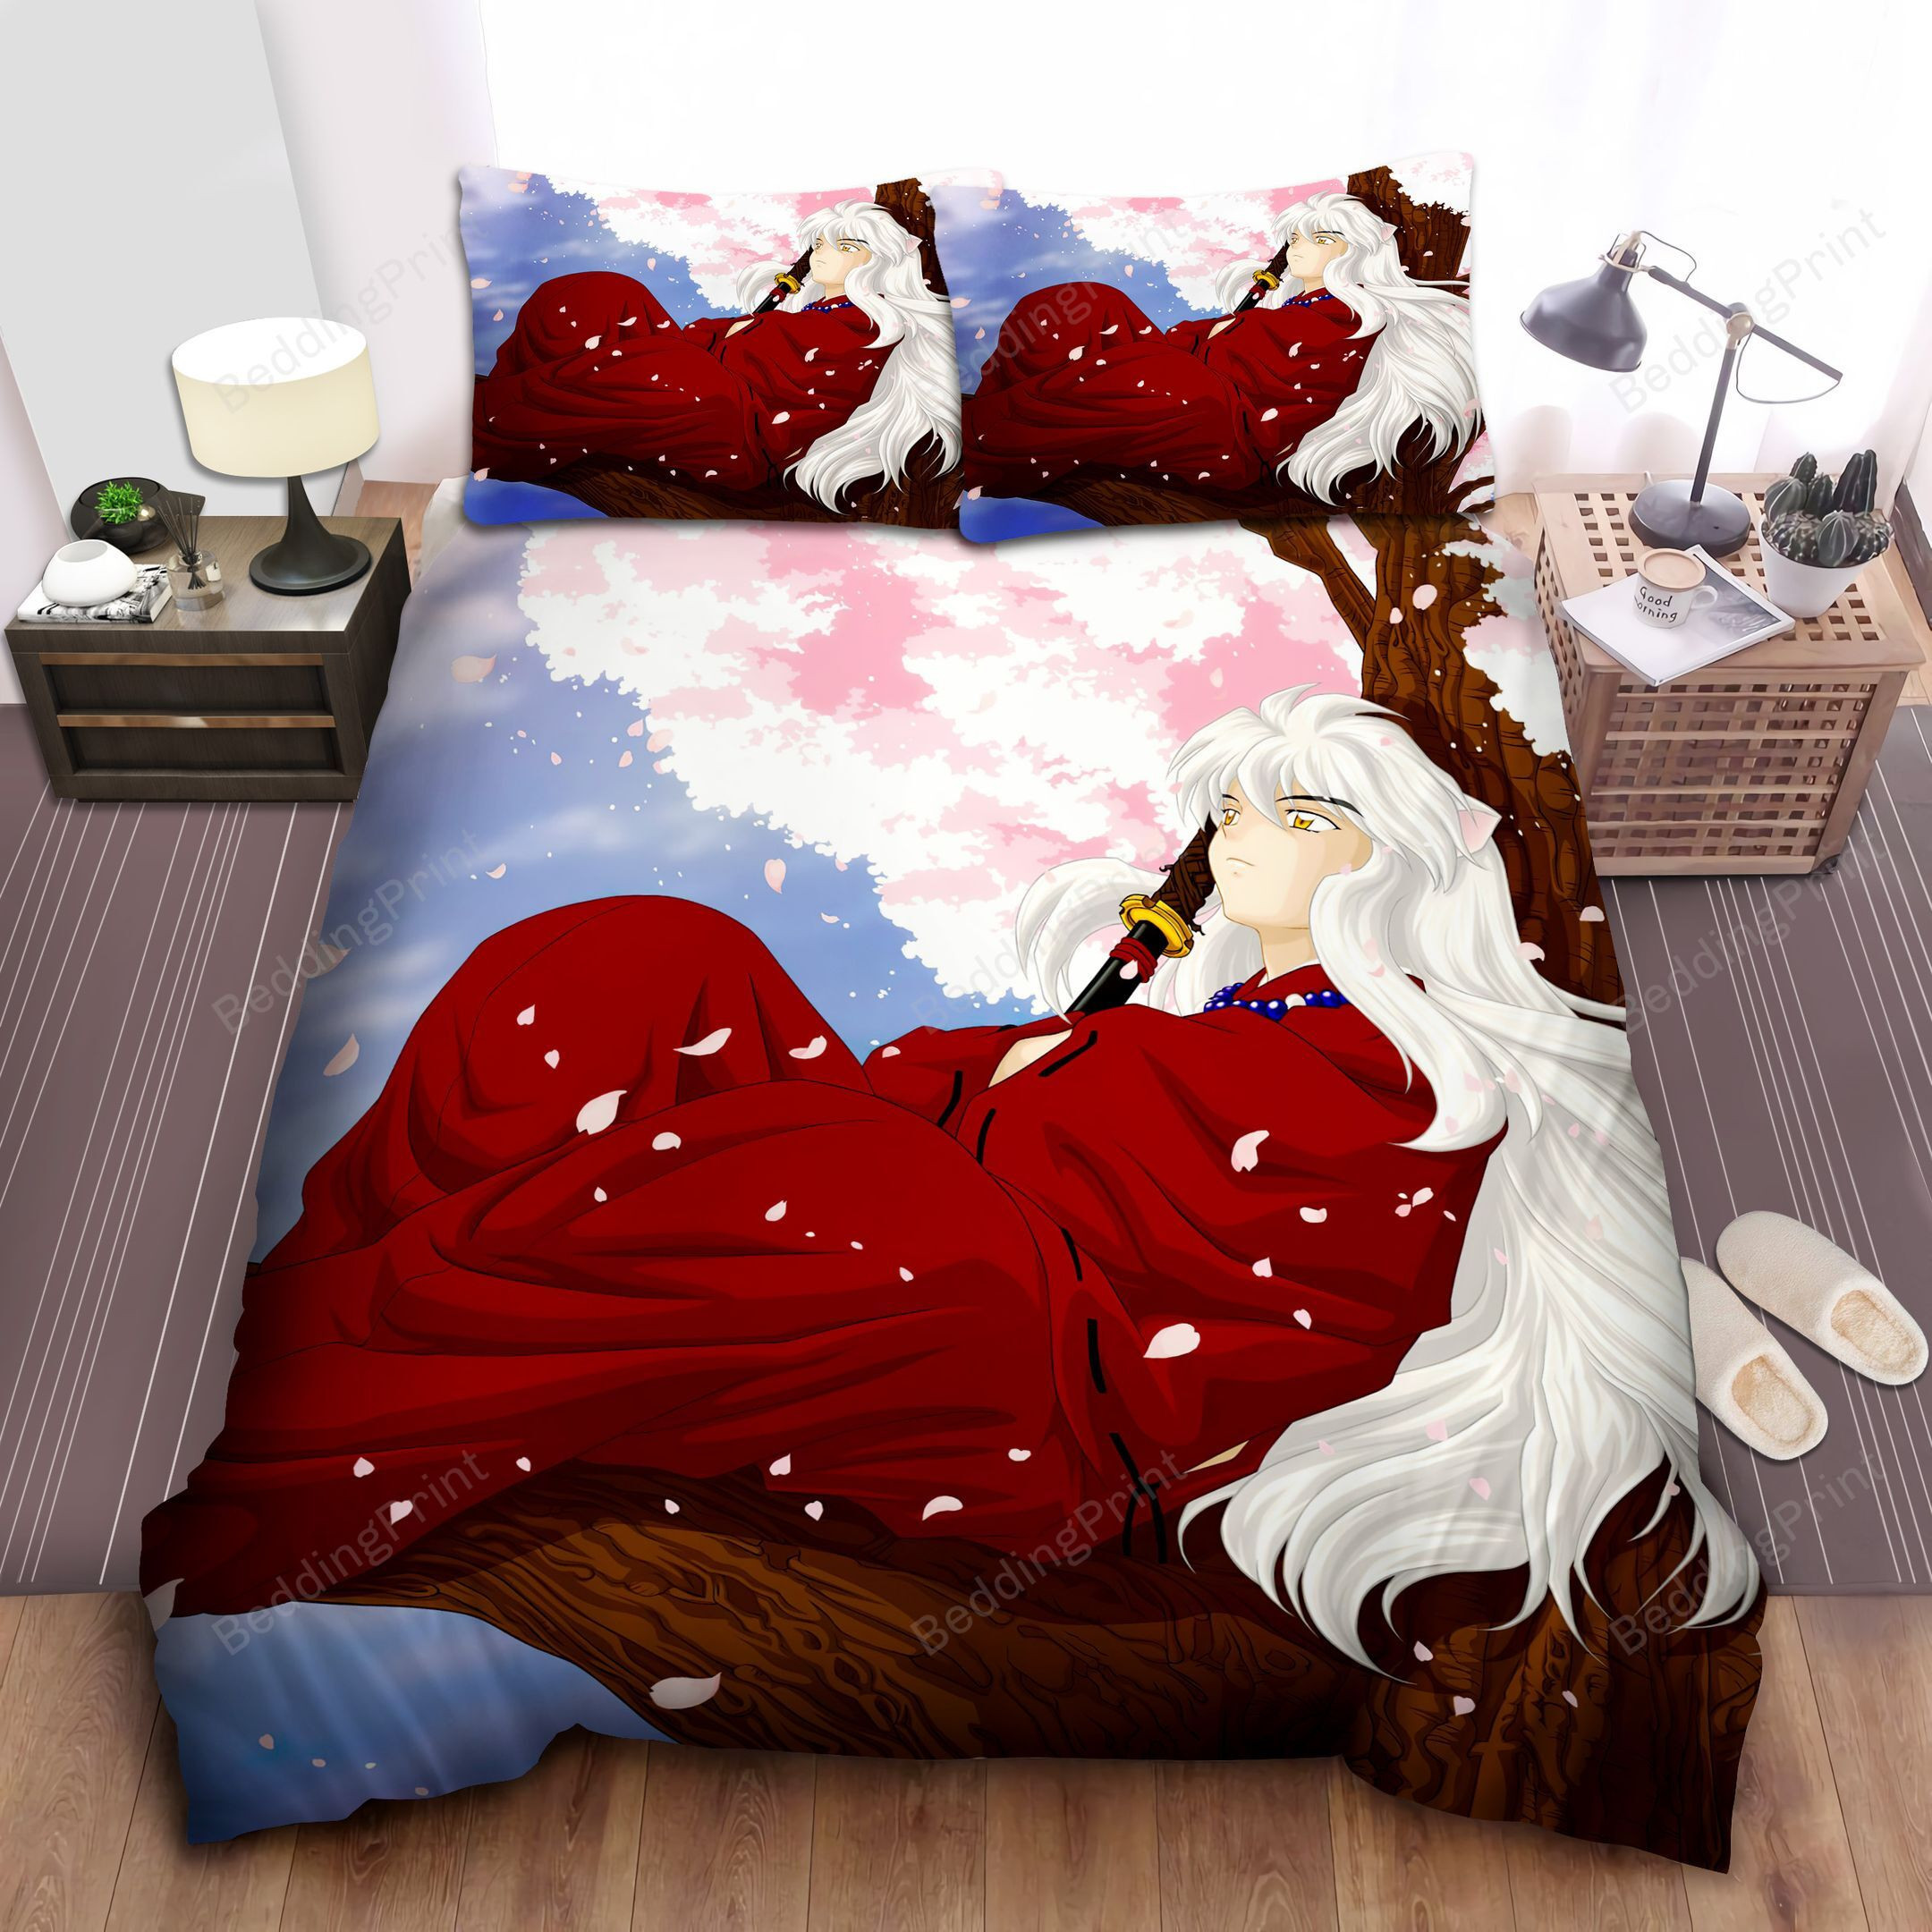 Inuyasha And Sakura Tree Bed Sheets Duvet Cover Bedding Sets Homefavo 4194